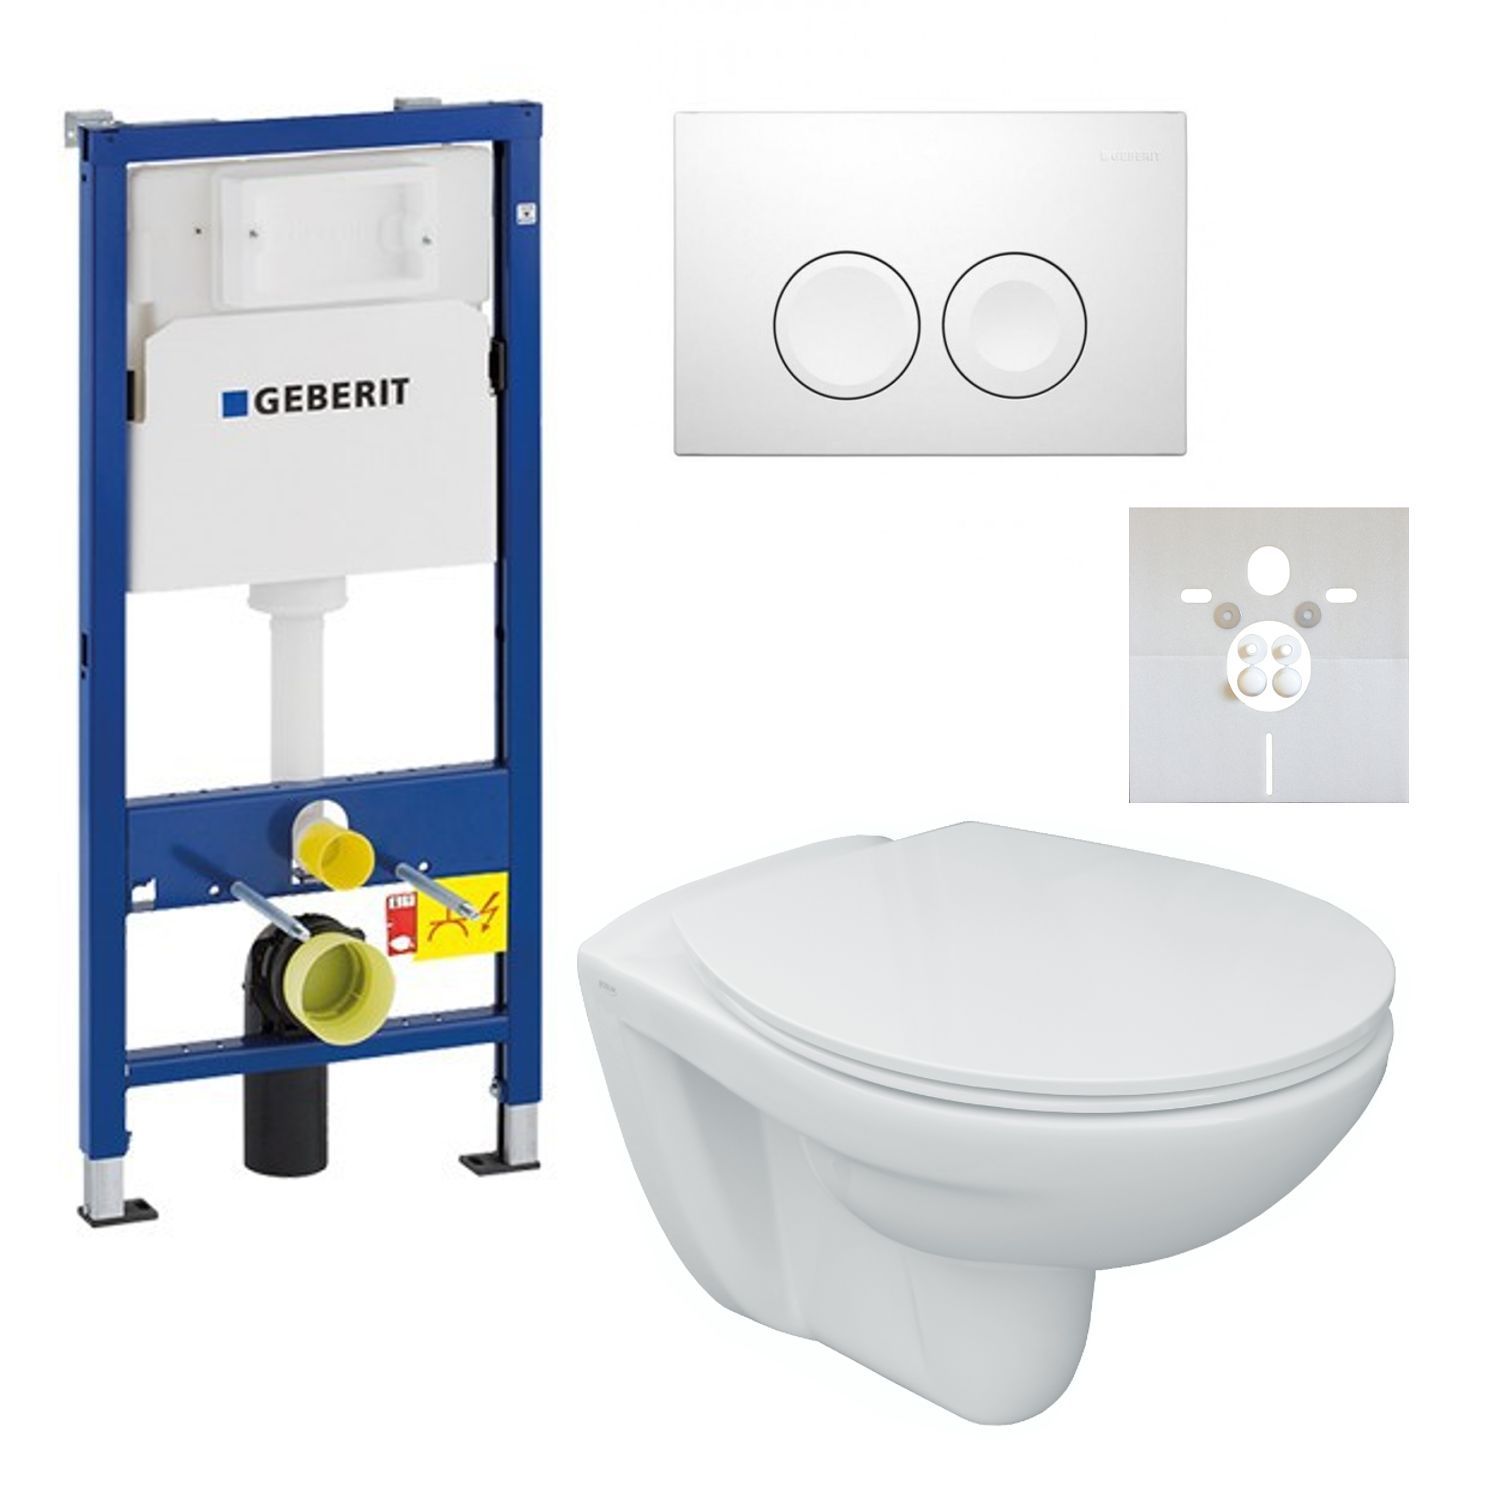 Vorwand-/Einbauelement für Toilette mit Unterputz-Spülkasten Delta (UP100) „DuofixBasic“, Betätigungsplatte „Delta25“ für 2-Mengen-Spülung (früher Delta21), Schallschutzset für wandhängende Bidets & WCs K33303, Wand-Tiefspül-WC, WC-Sitz „Revo“